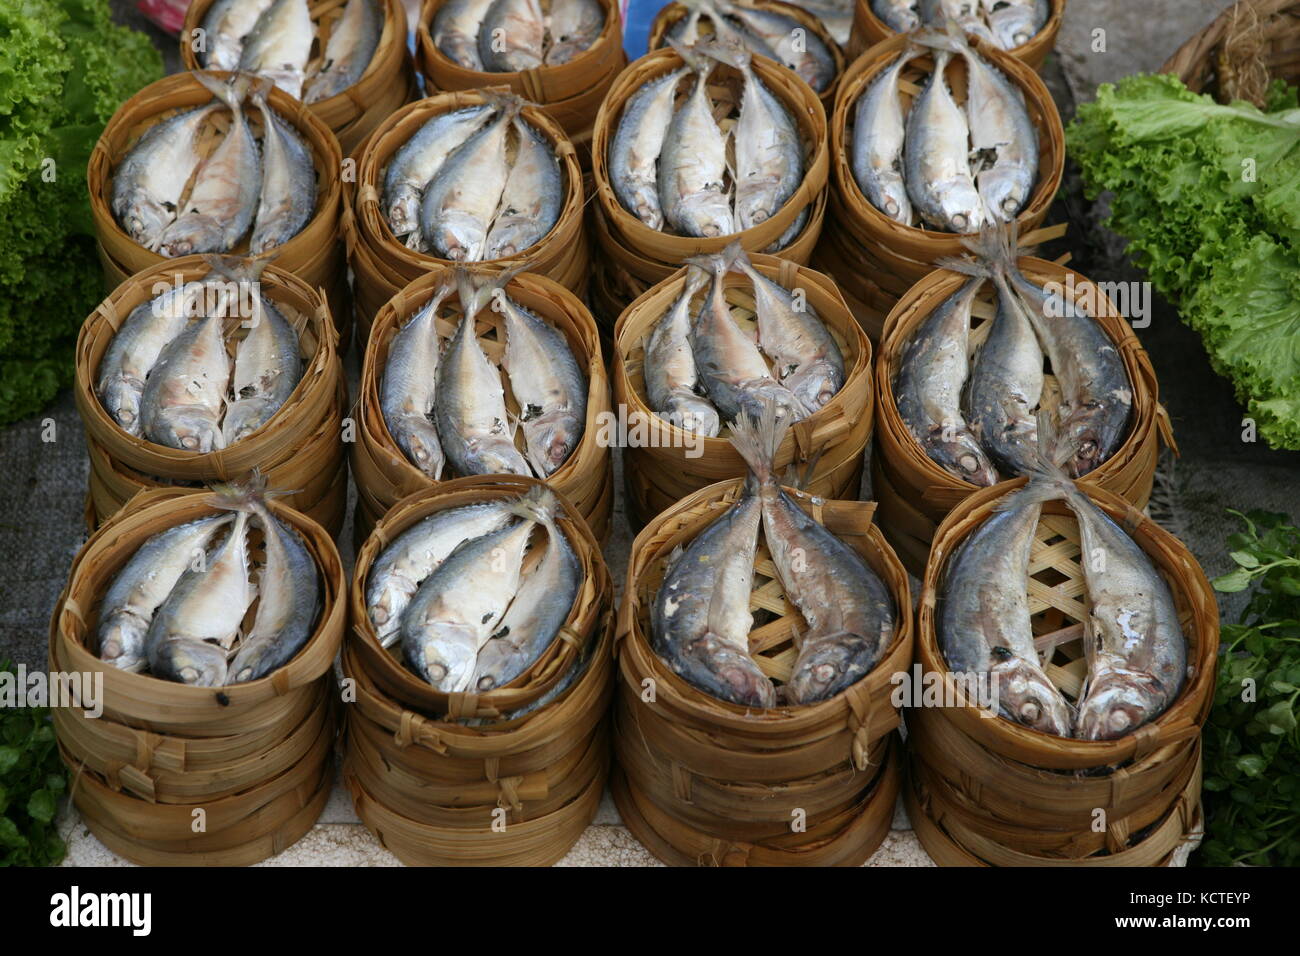 En fische einem korb auf asiatischem markt - pescado en una canasta de mercado asiático Foto de stock